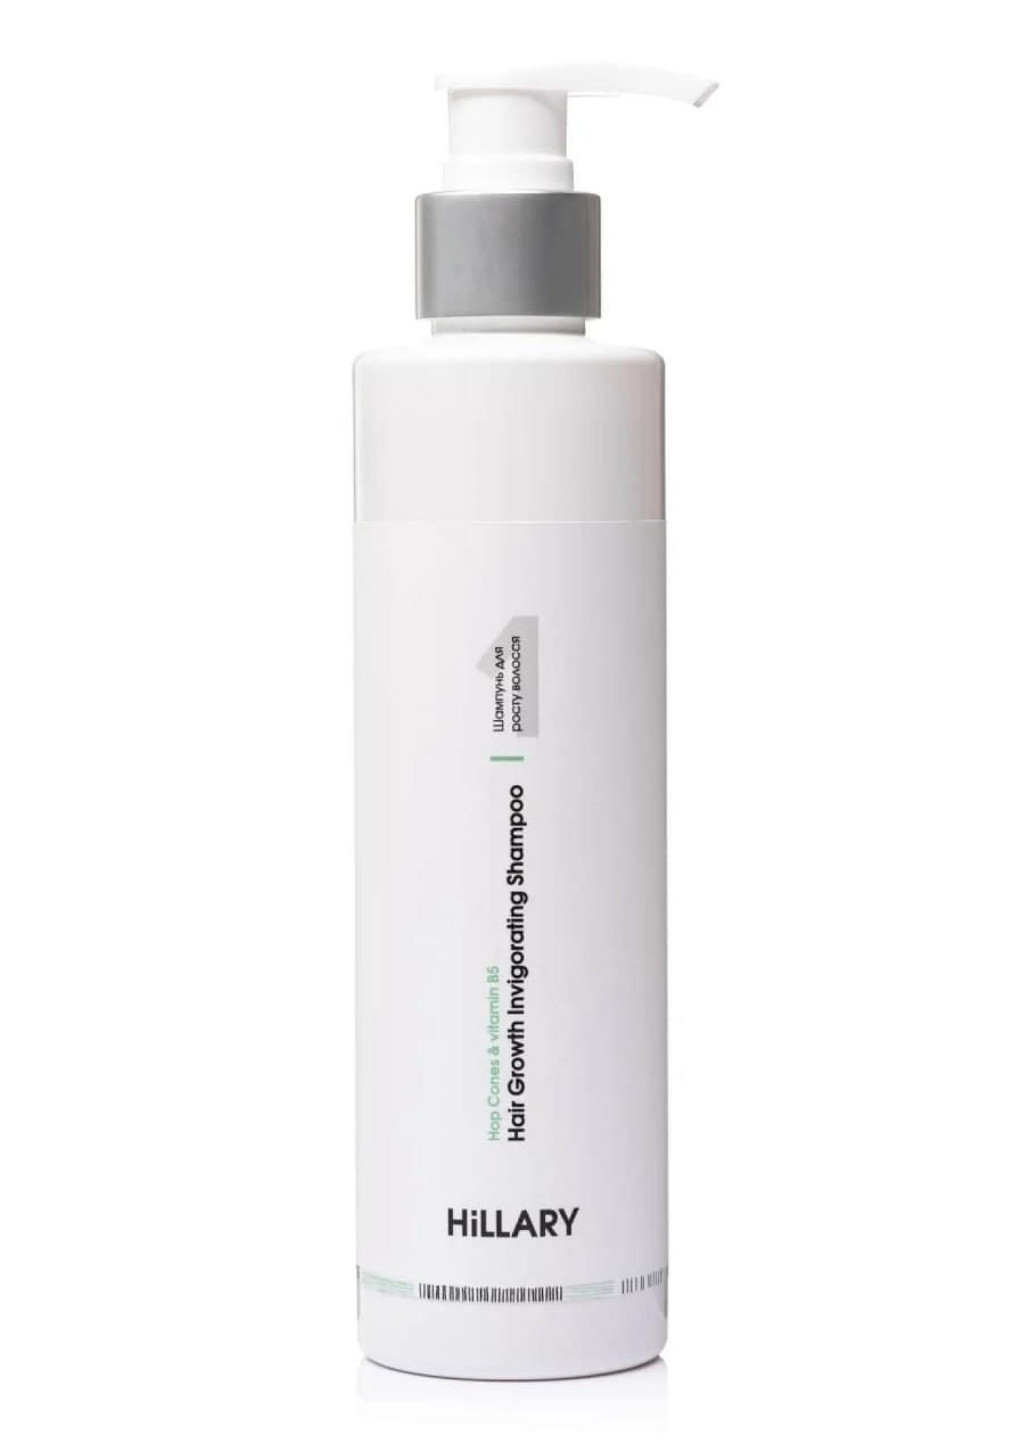 Энзимный пилинг для кожи головы + Комплекс для роста волос Hop Cones & B5 Hillary (260375892)